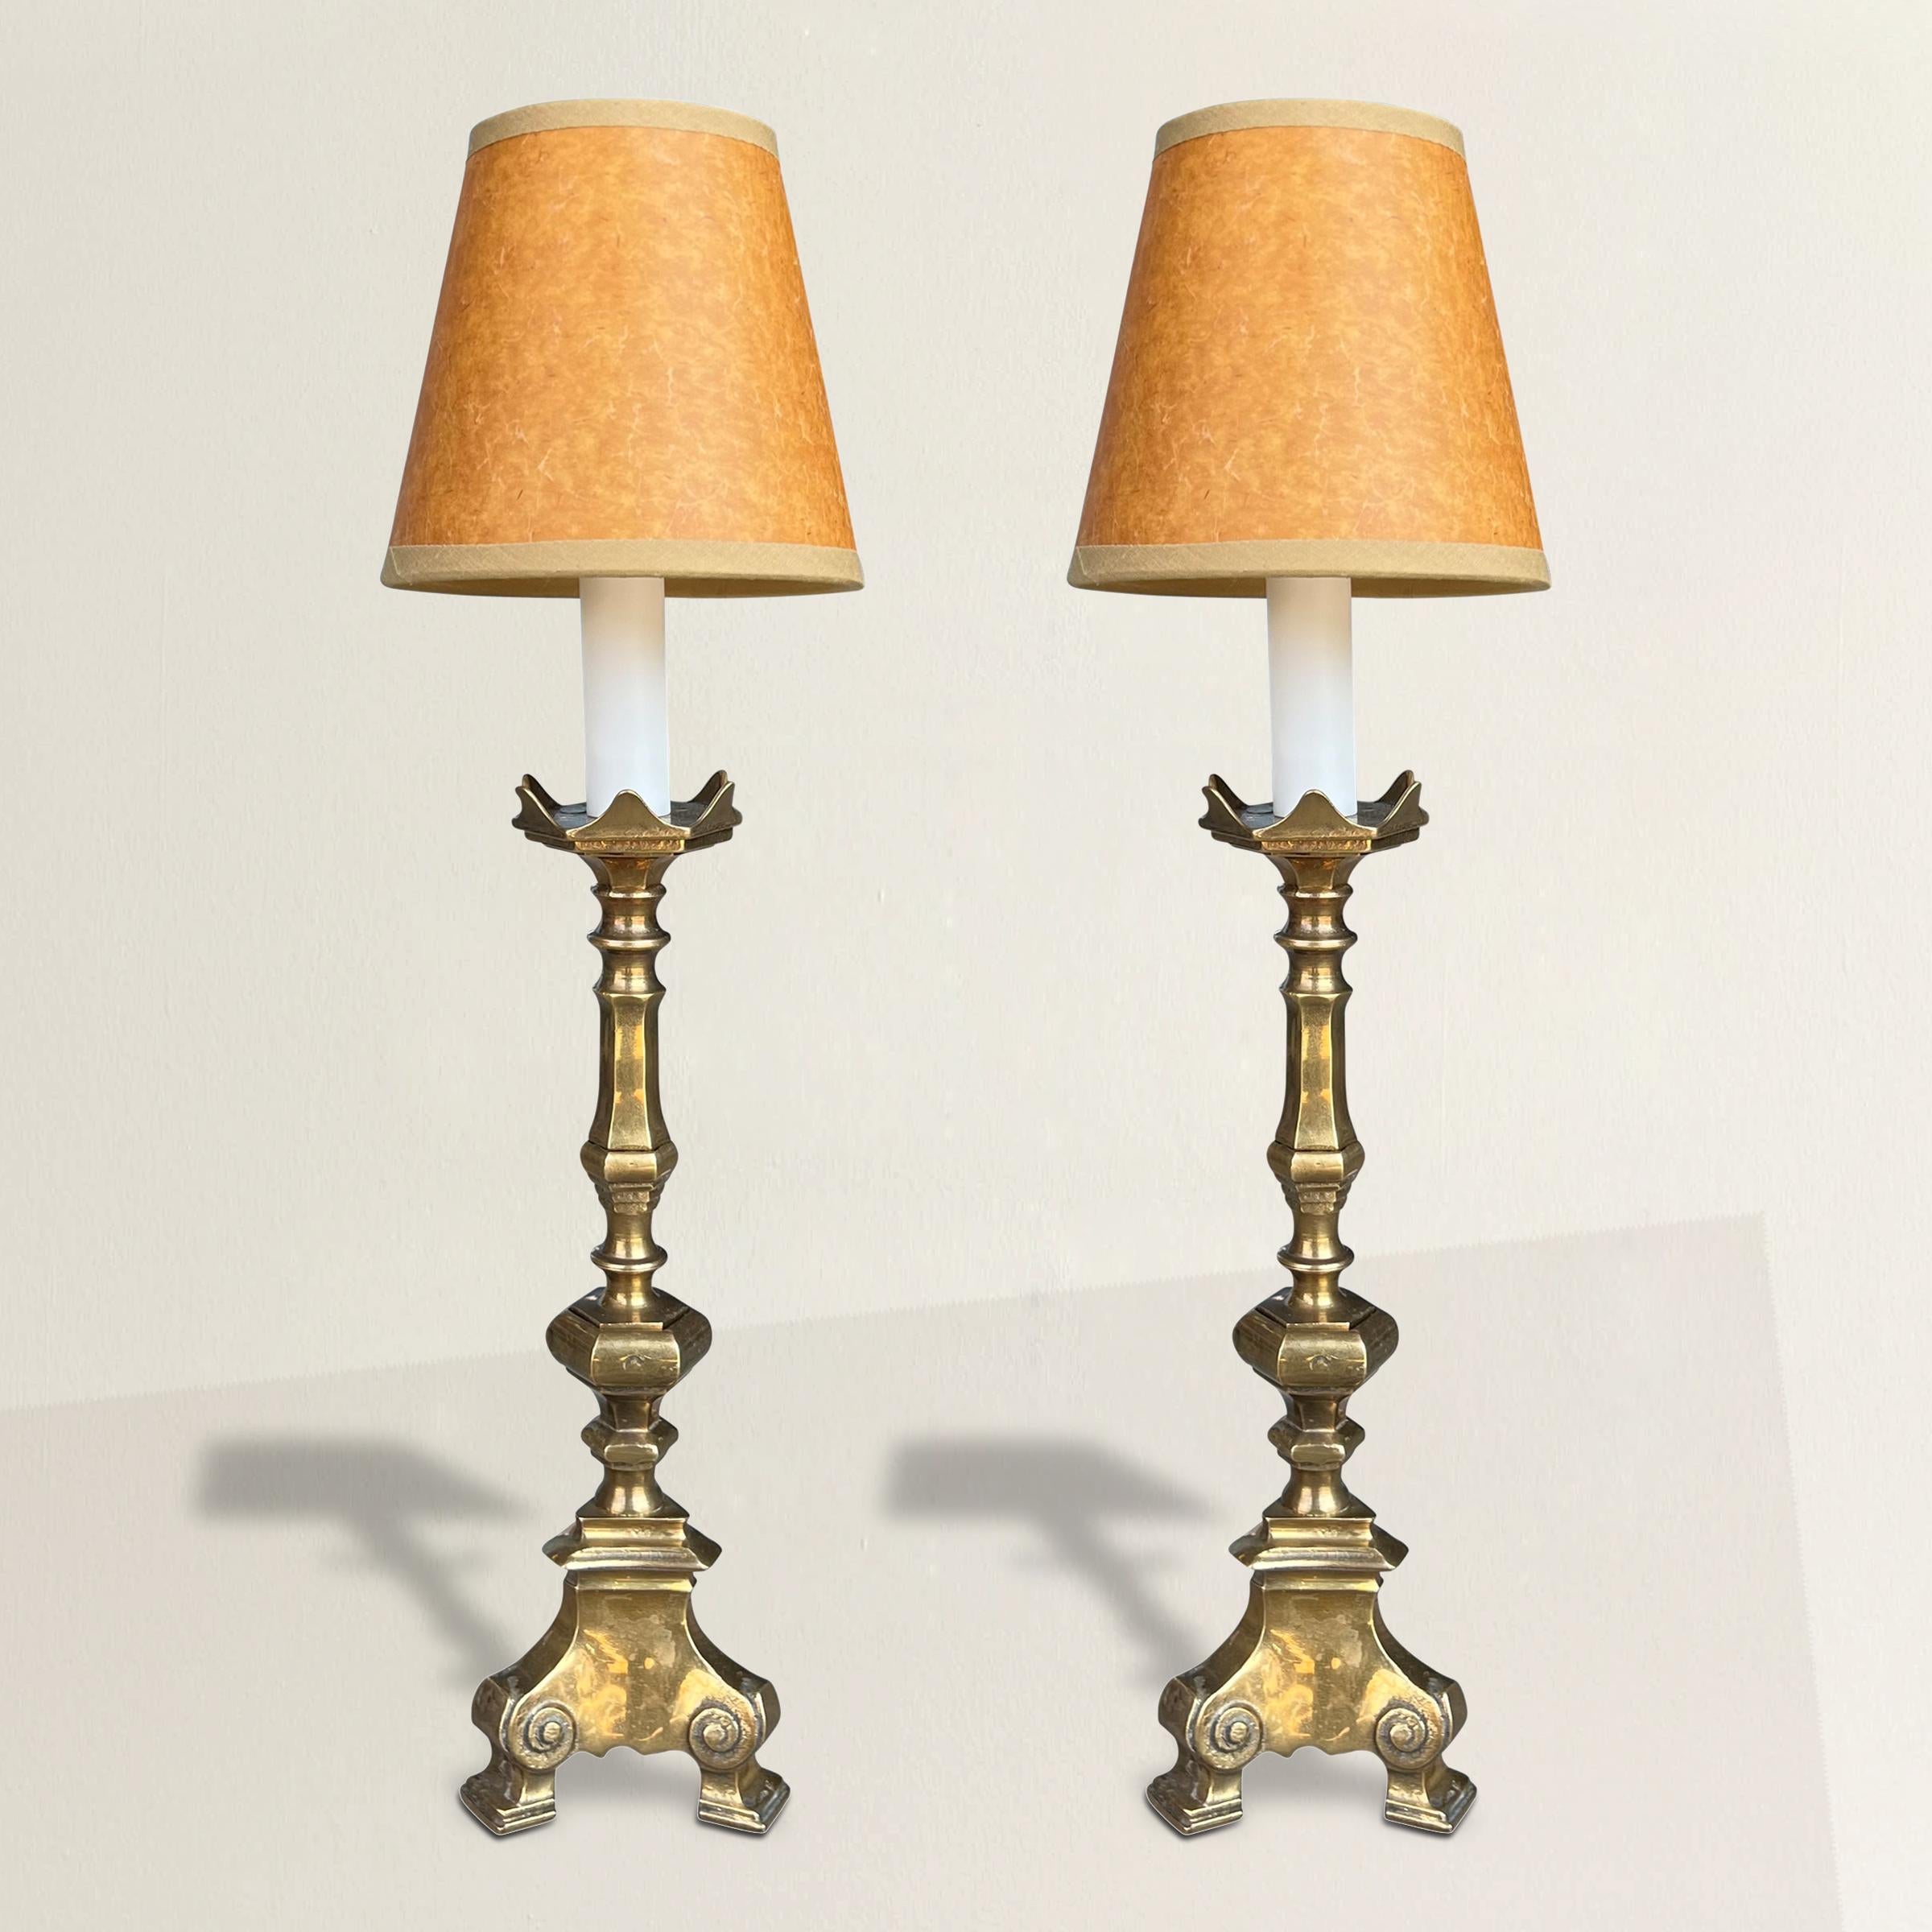 Entrez dans l'allure du passé avec cette paire de chandeliers français en bronze du XIXe siècle, transformés avec soin en lampes rayonnantes. Électrifiée avec précision, leur élégance, autrefois éclairée par des bougies, projette aujourd'hui une